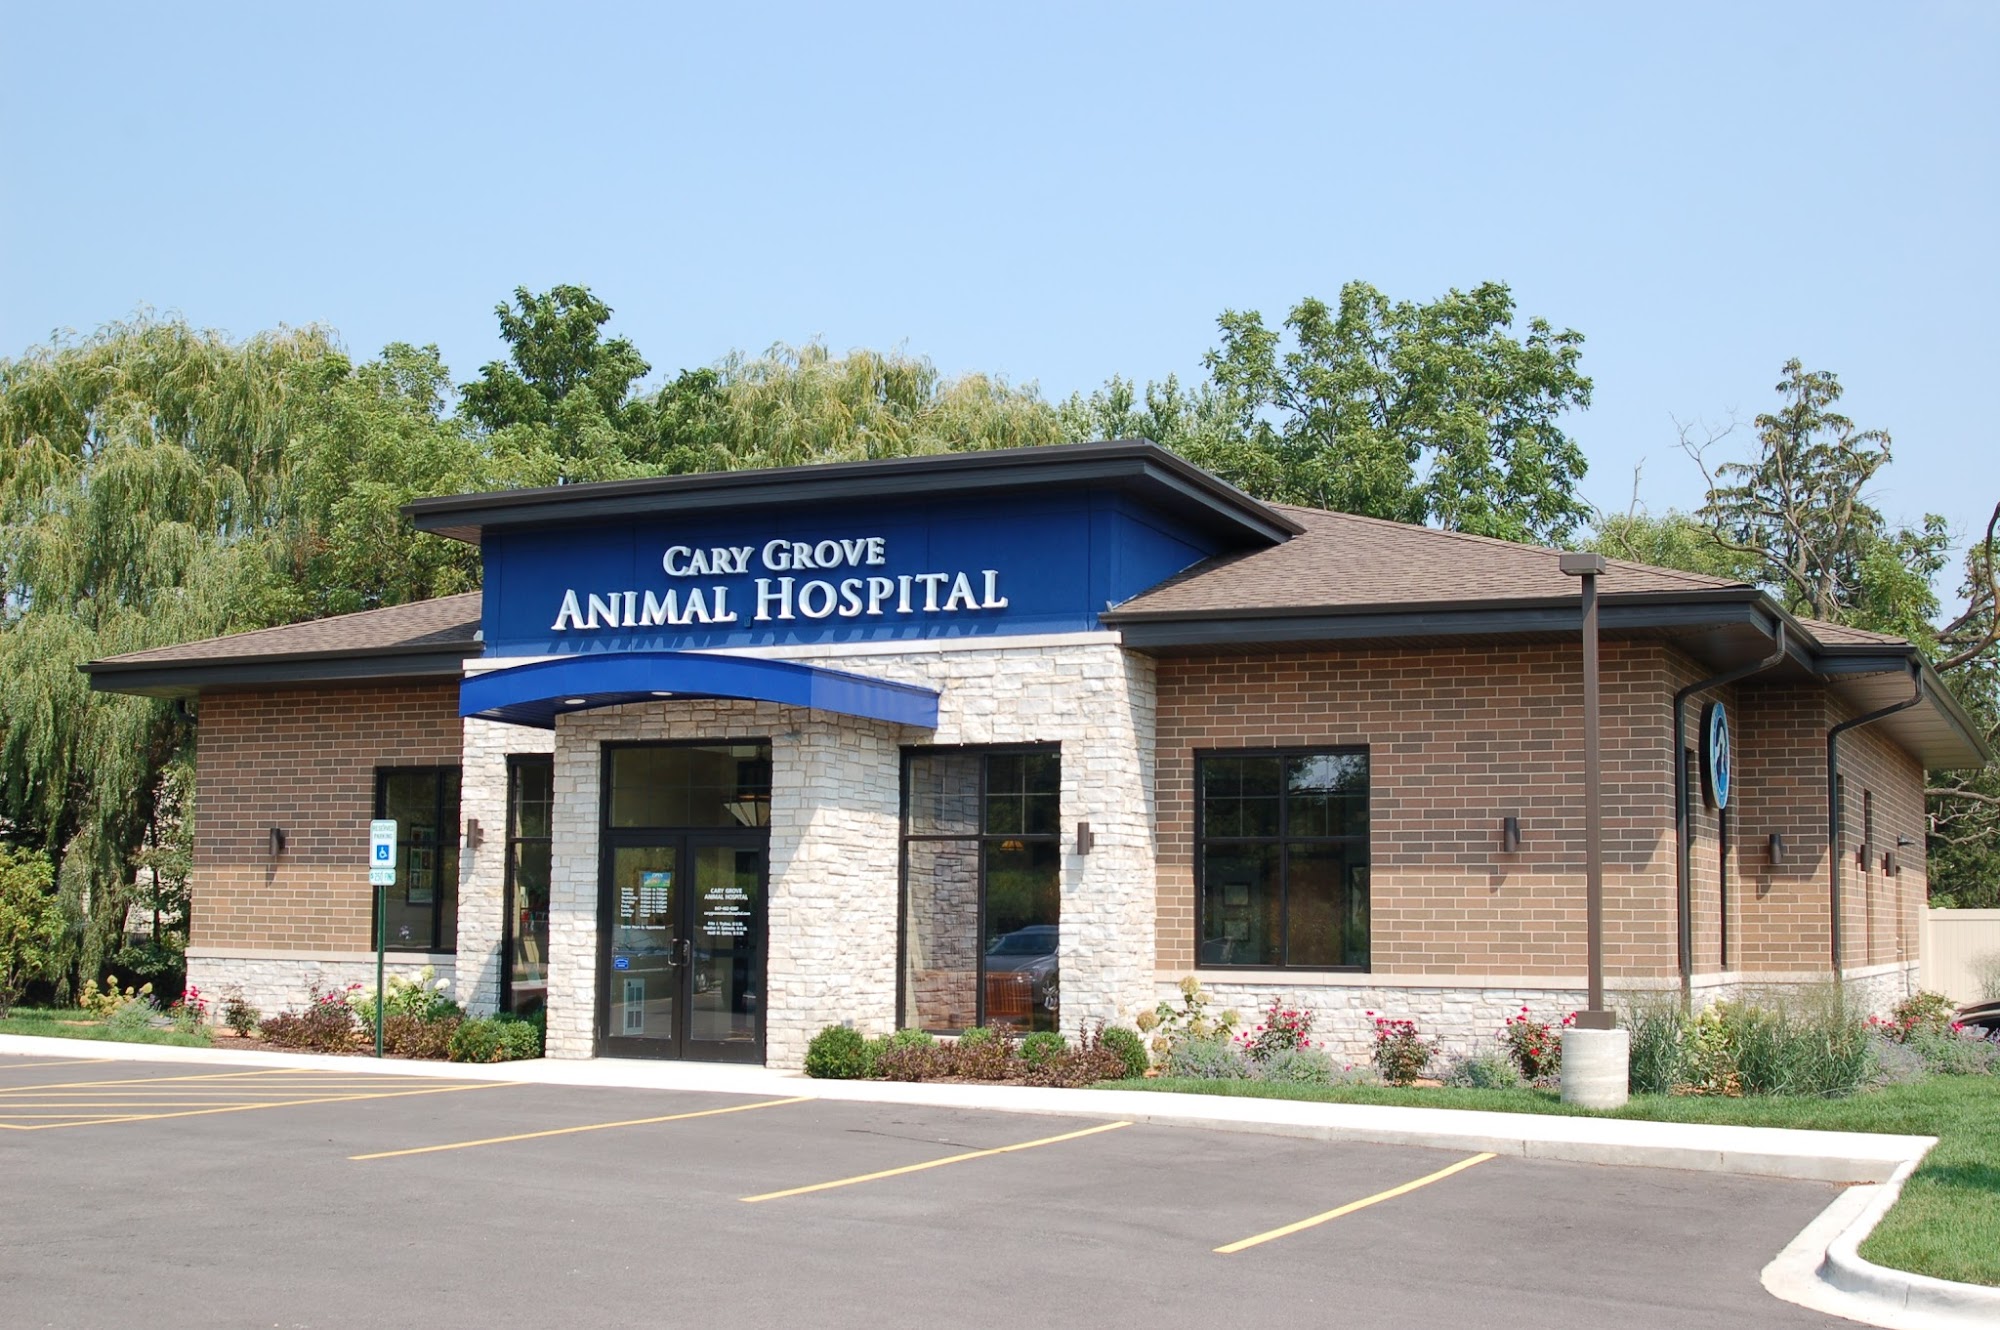 Cary Grove Animal Hospital